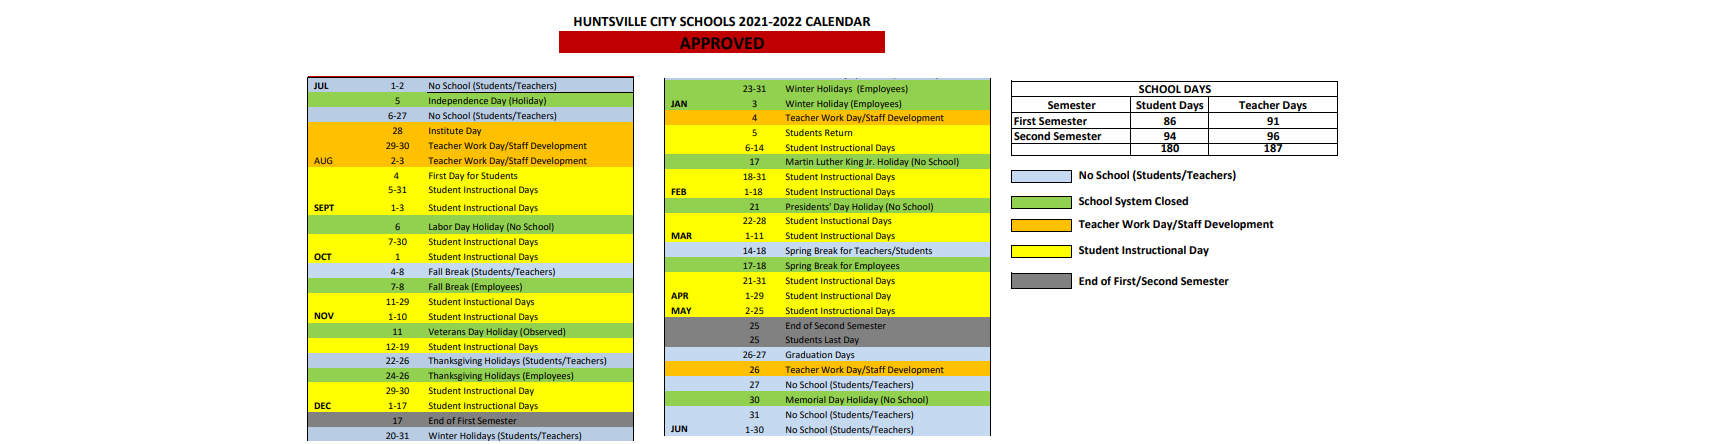 District School Academic Calendar Key for Roger B Chaffee Elementary School